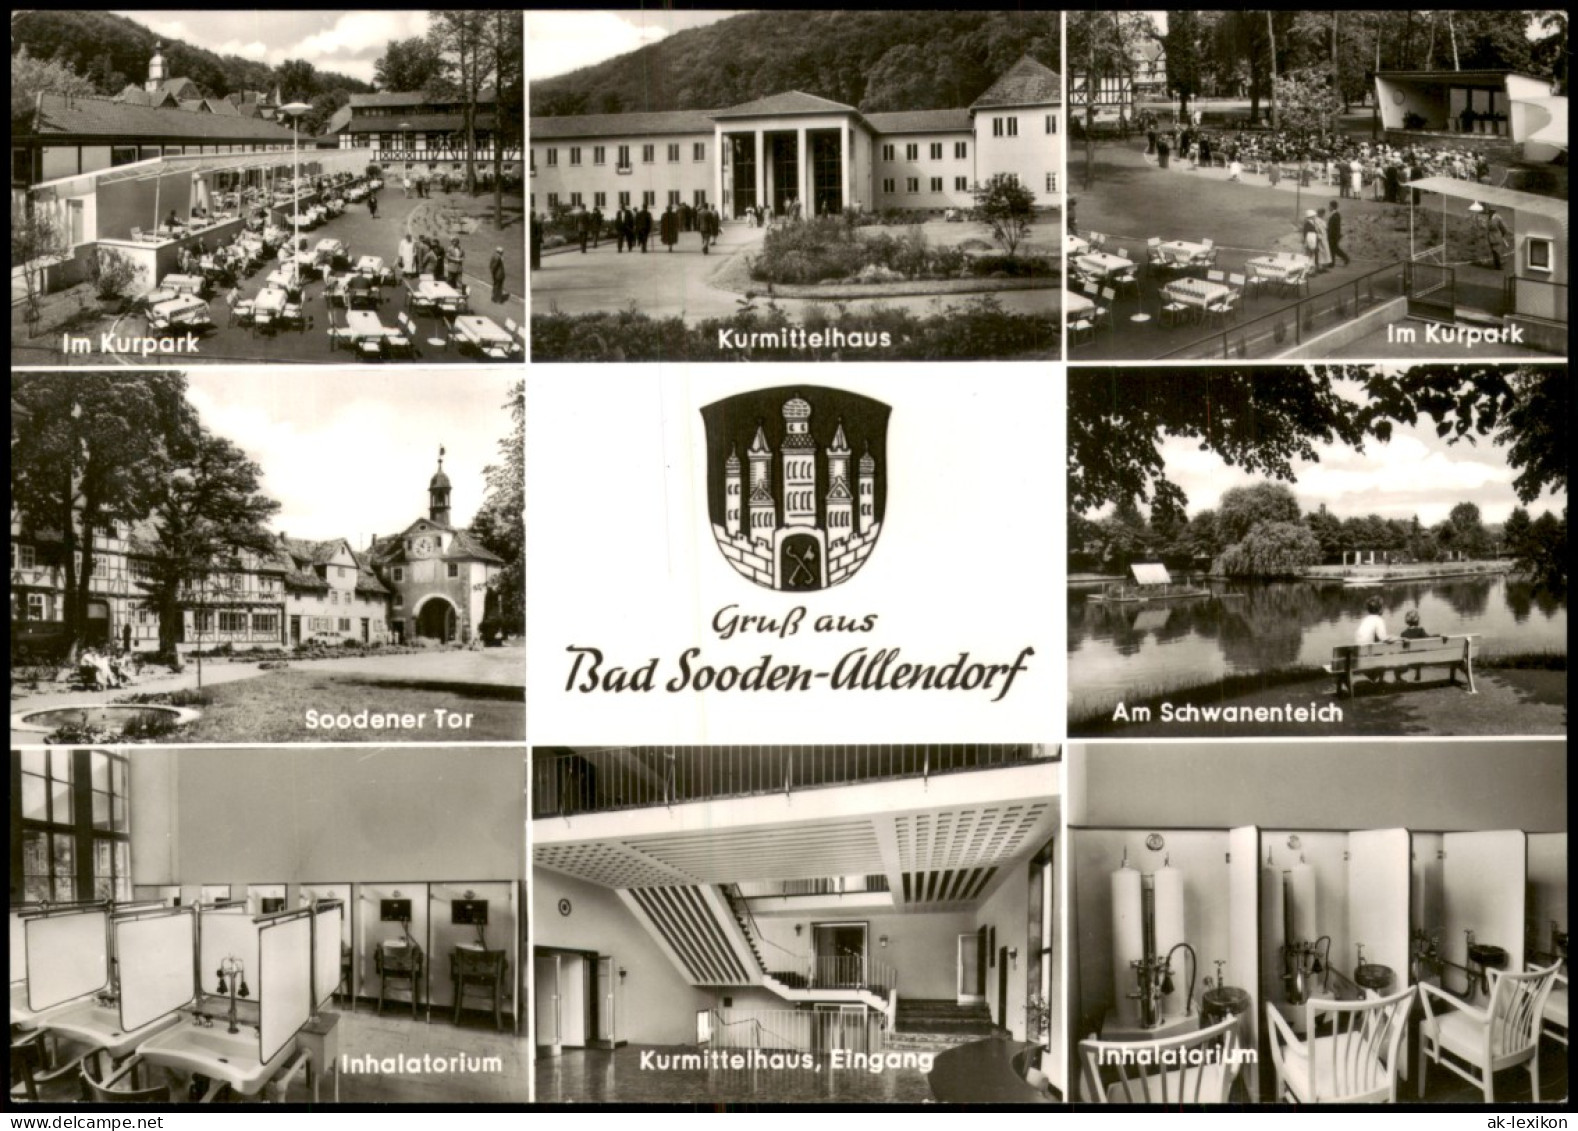 Bad Sooden-Allendorf Inhalatorium, Kurpark, Schwanenteich, Kurmittelhaus 1968 - Bad Sooden-Allendorf